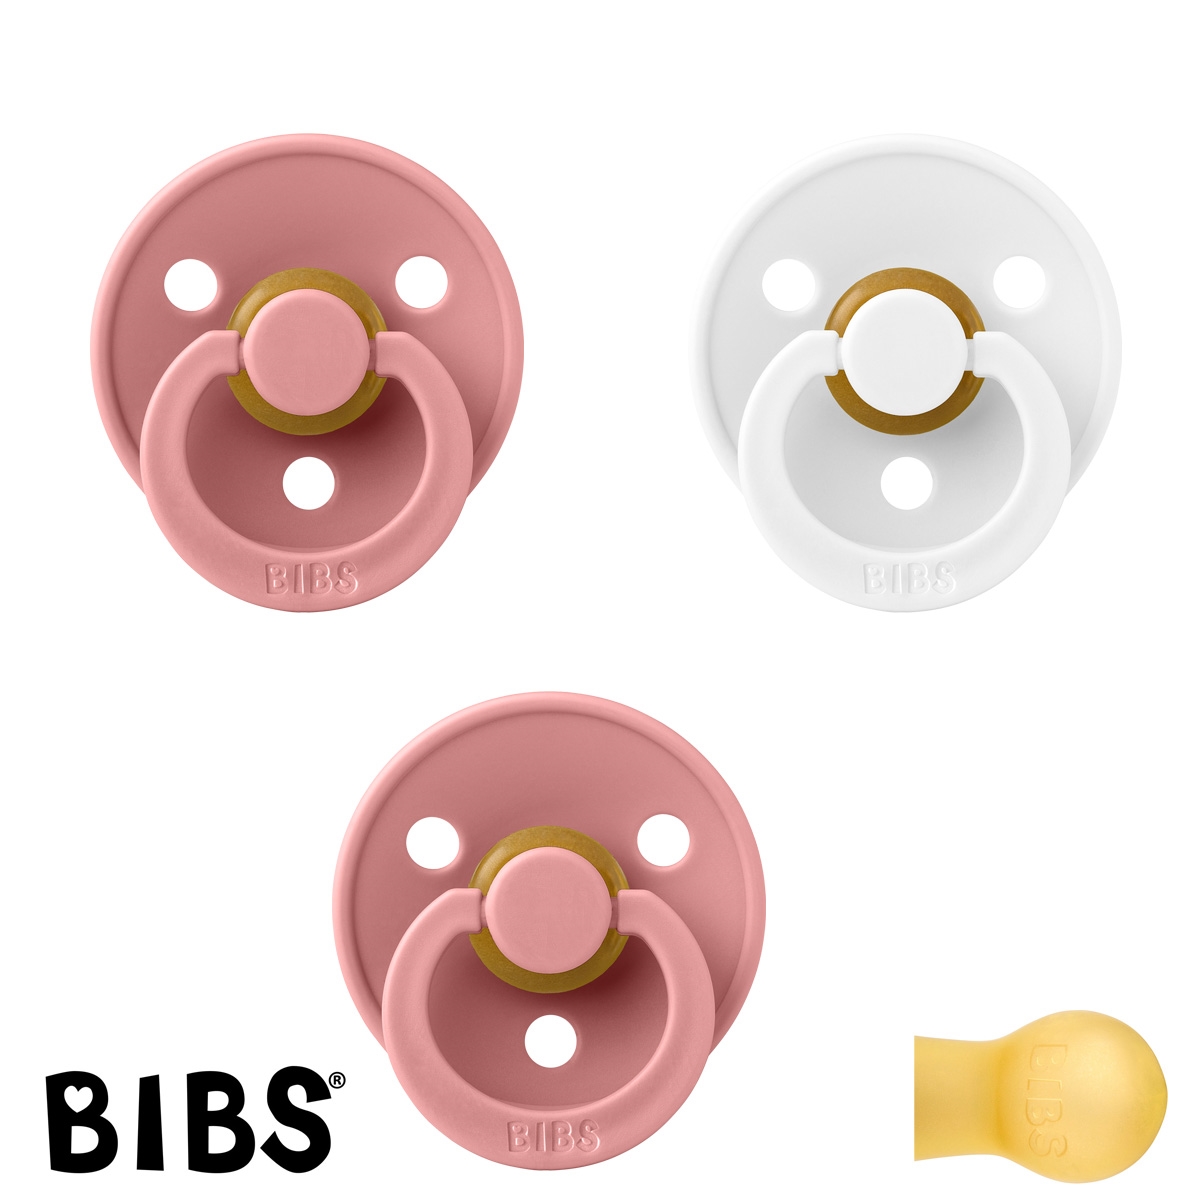 BIBS Colour Sutter med navn str1, 2 Dusty Pink, 1 White, Runde latex, Pakke med 3 sutter